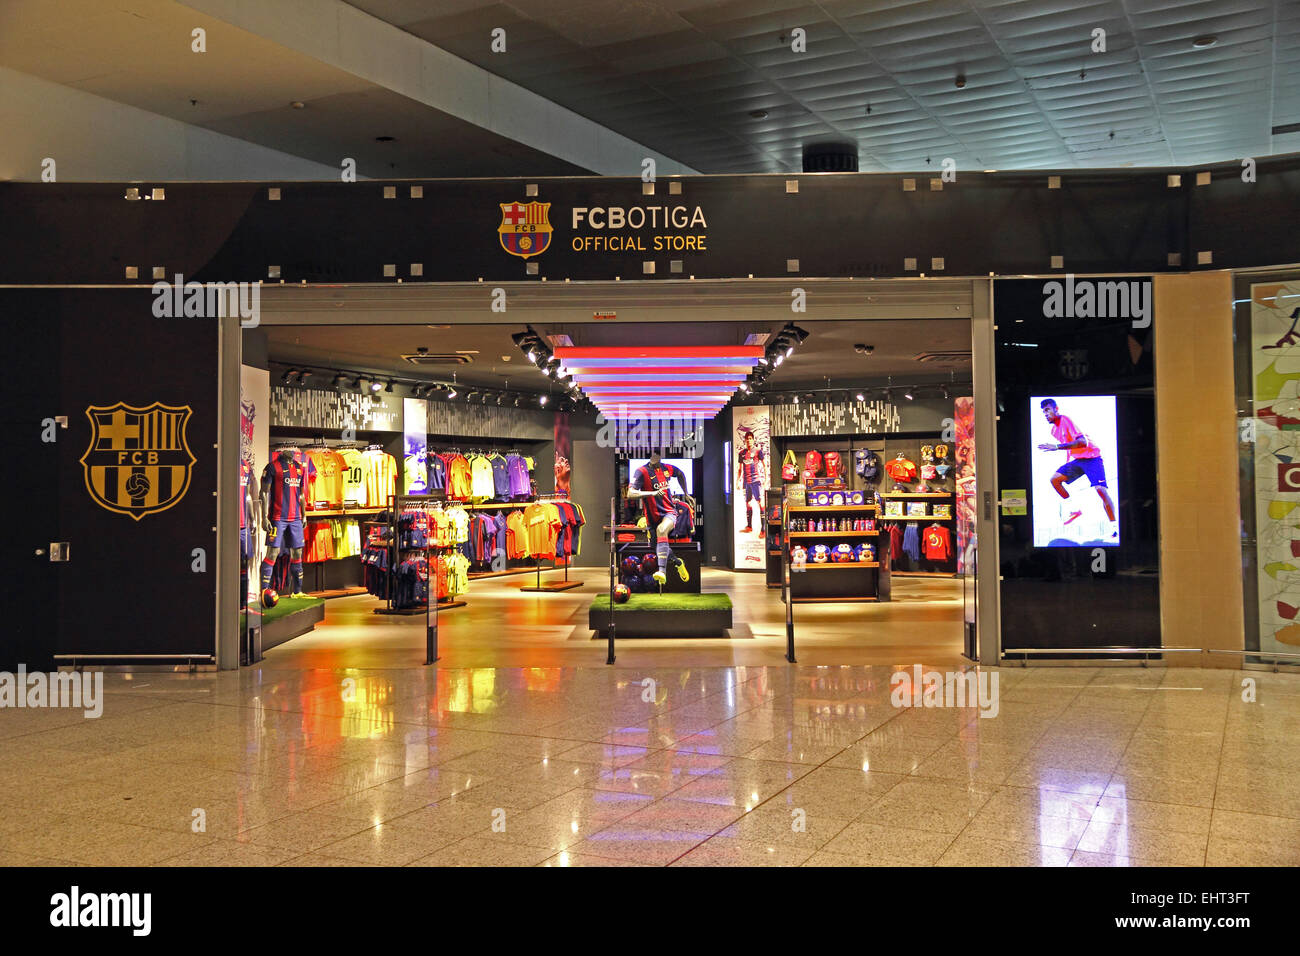 FC Barcelone officiel FCBotiga, magasin de souvenirs, de l'aéroport El Prat de Barcelone Banque D'Images